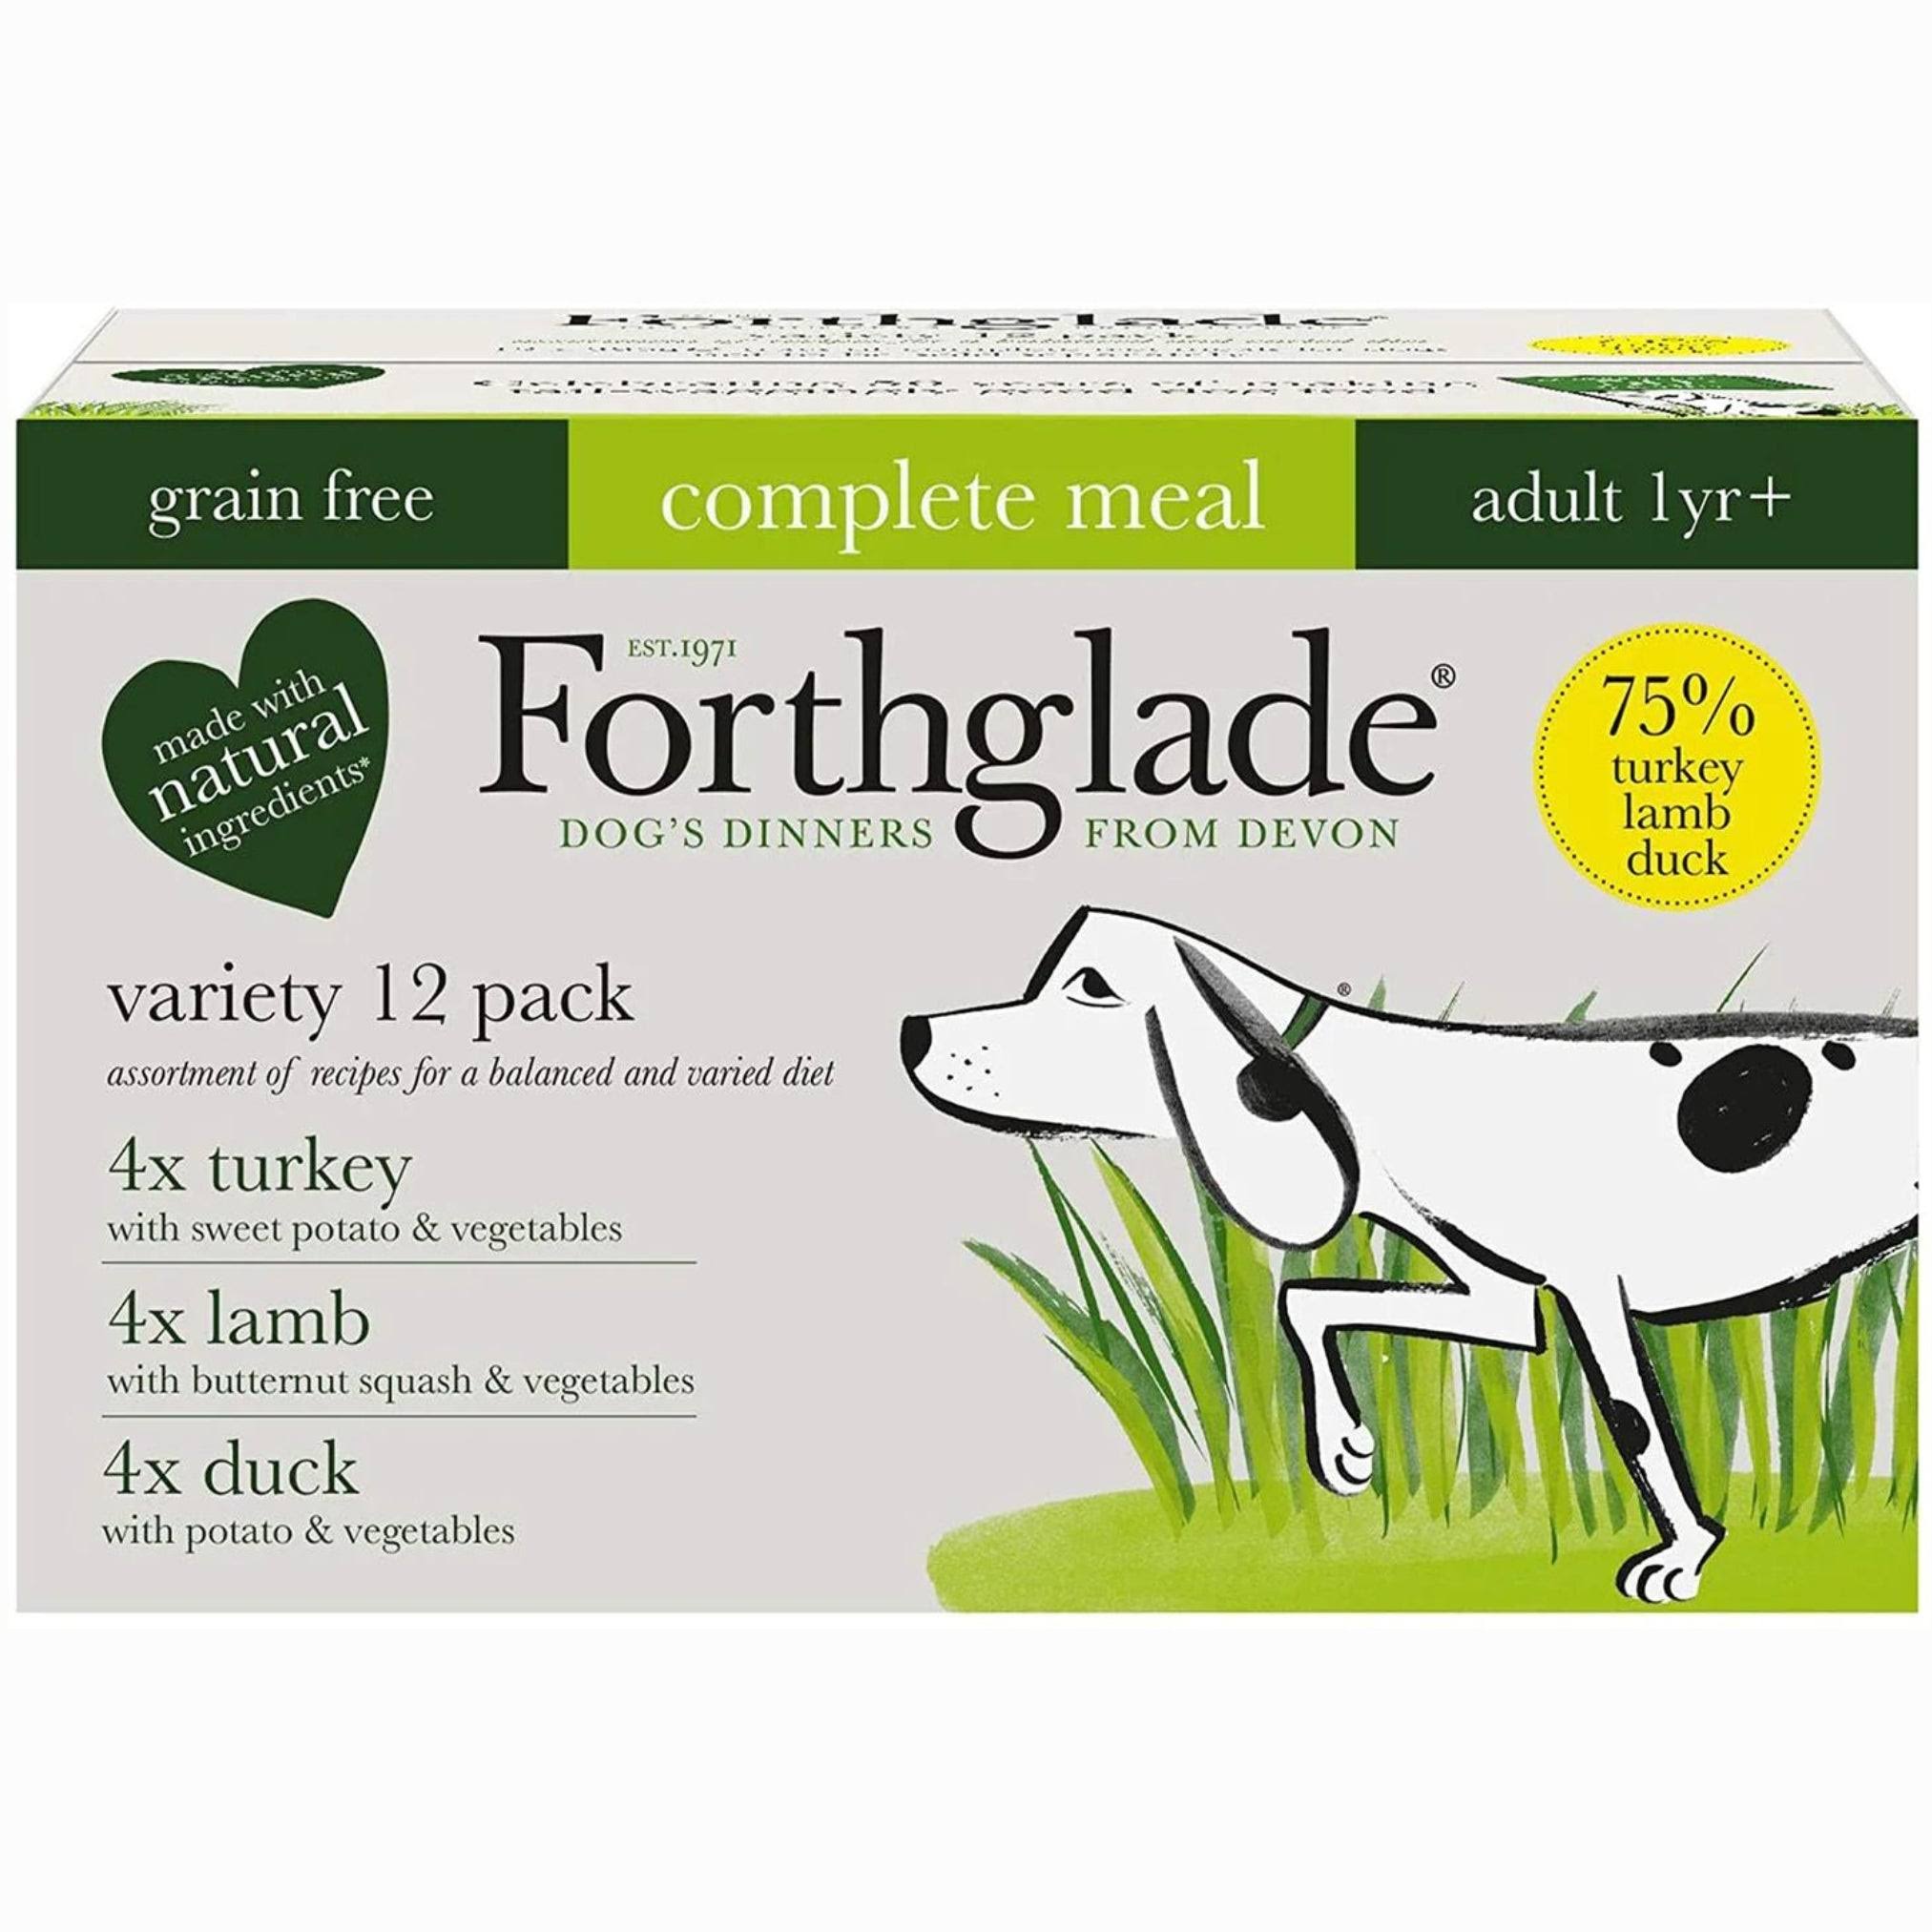 Forthglade Natural Complete Meal Adult Dog Food - 395g